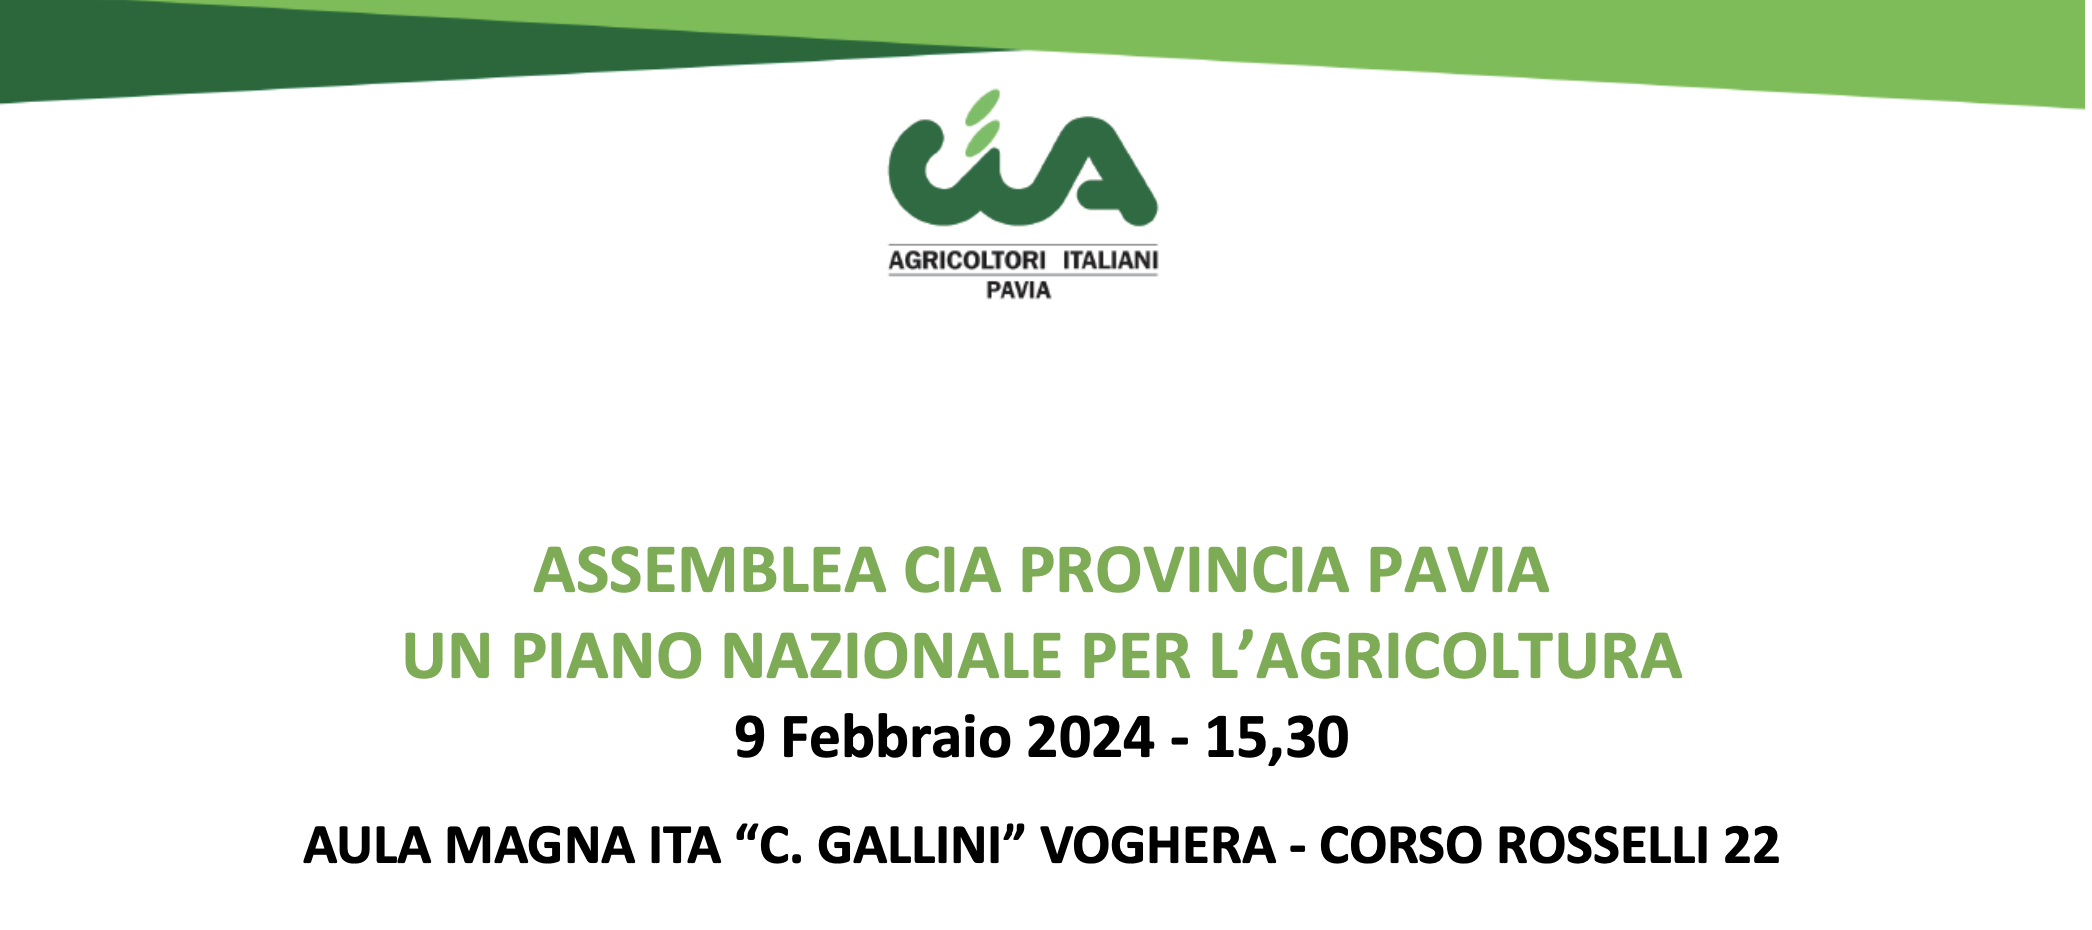 Un piano nazionale per l'agricoltura - Assemblea CIA Pavia